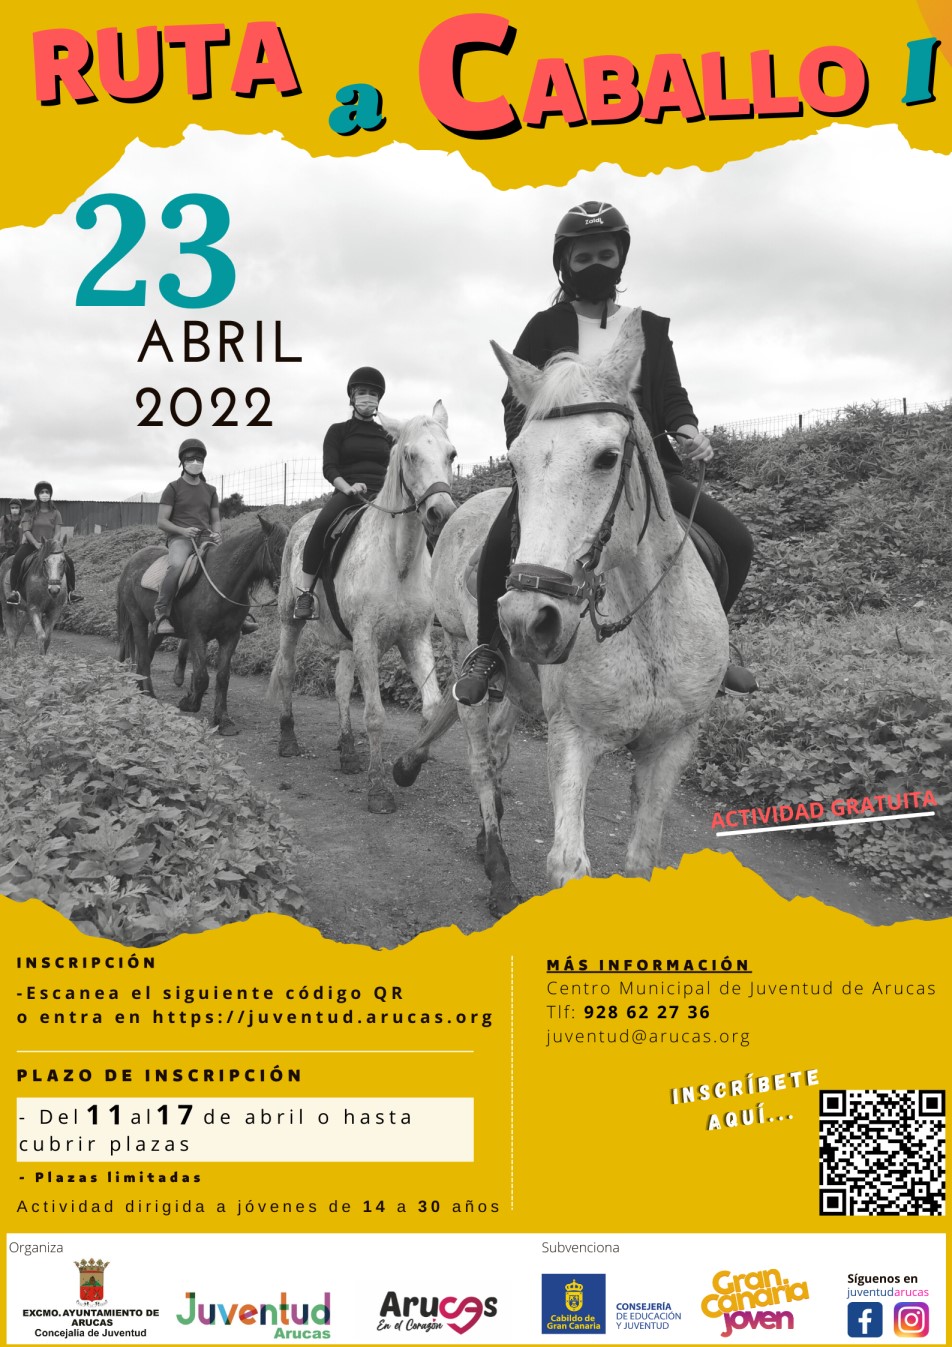 Ruta a caballo I 2022 - Reducido 60%